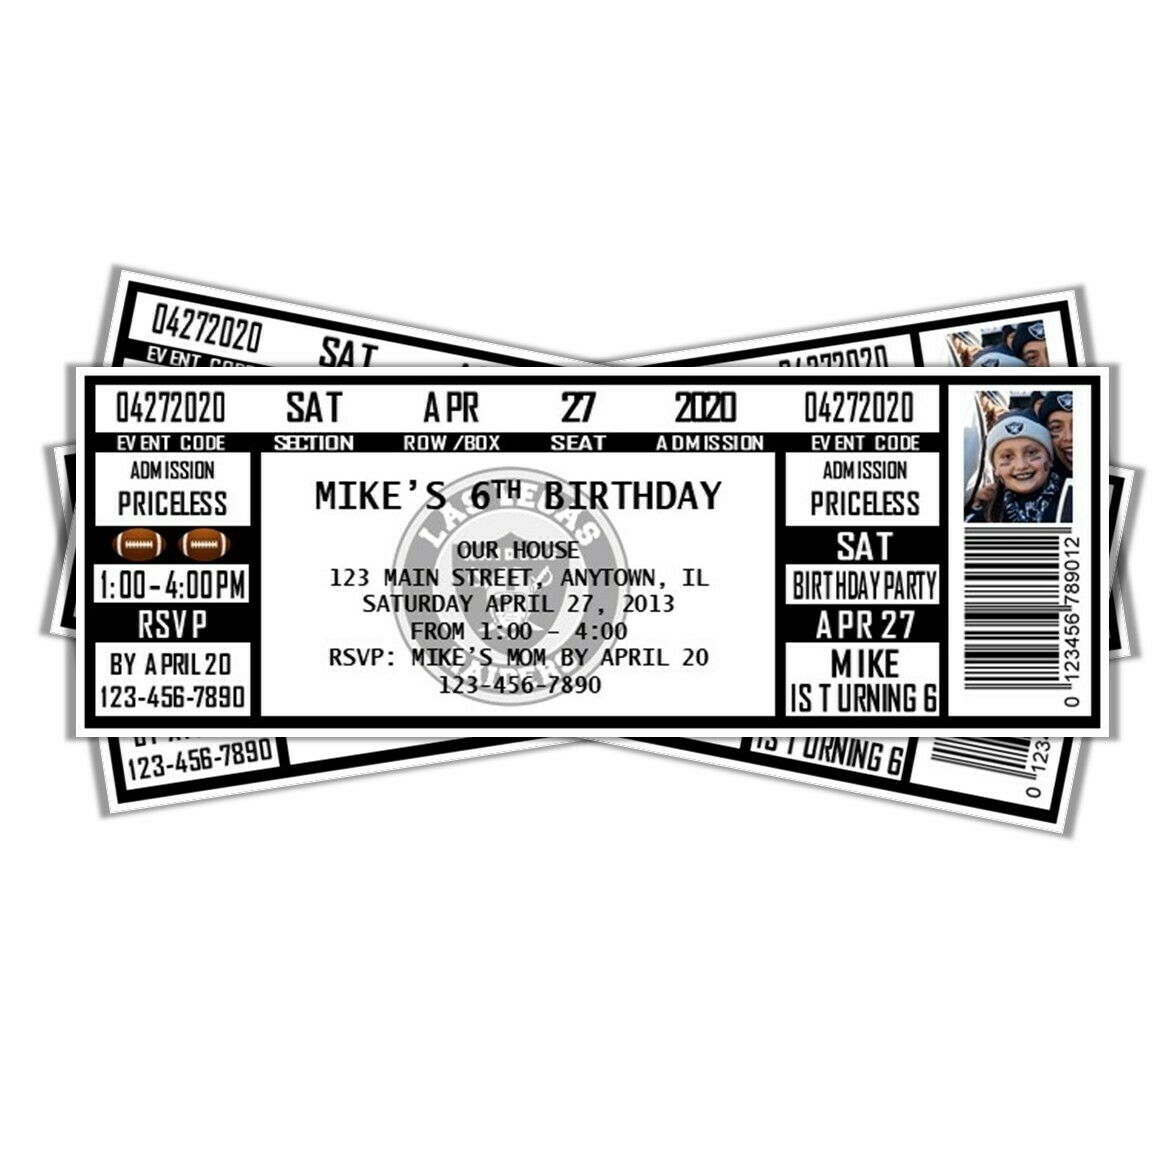 Las Vegas Raiders Vintage NFL Football Birthday Invitation Ticket Style  OAKLAND